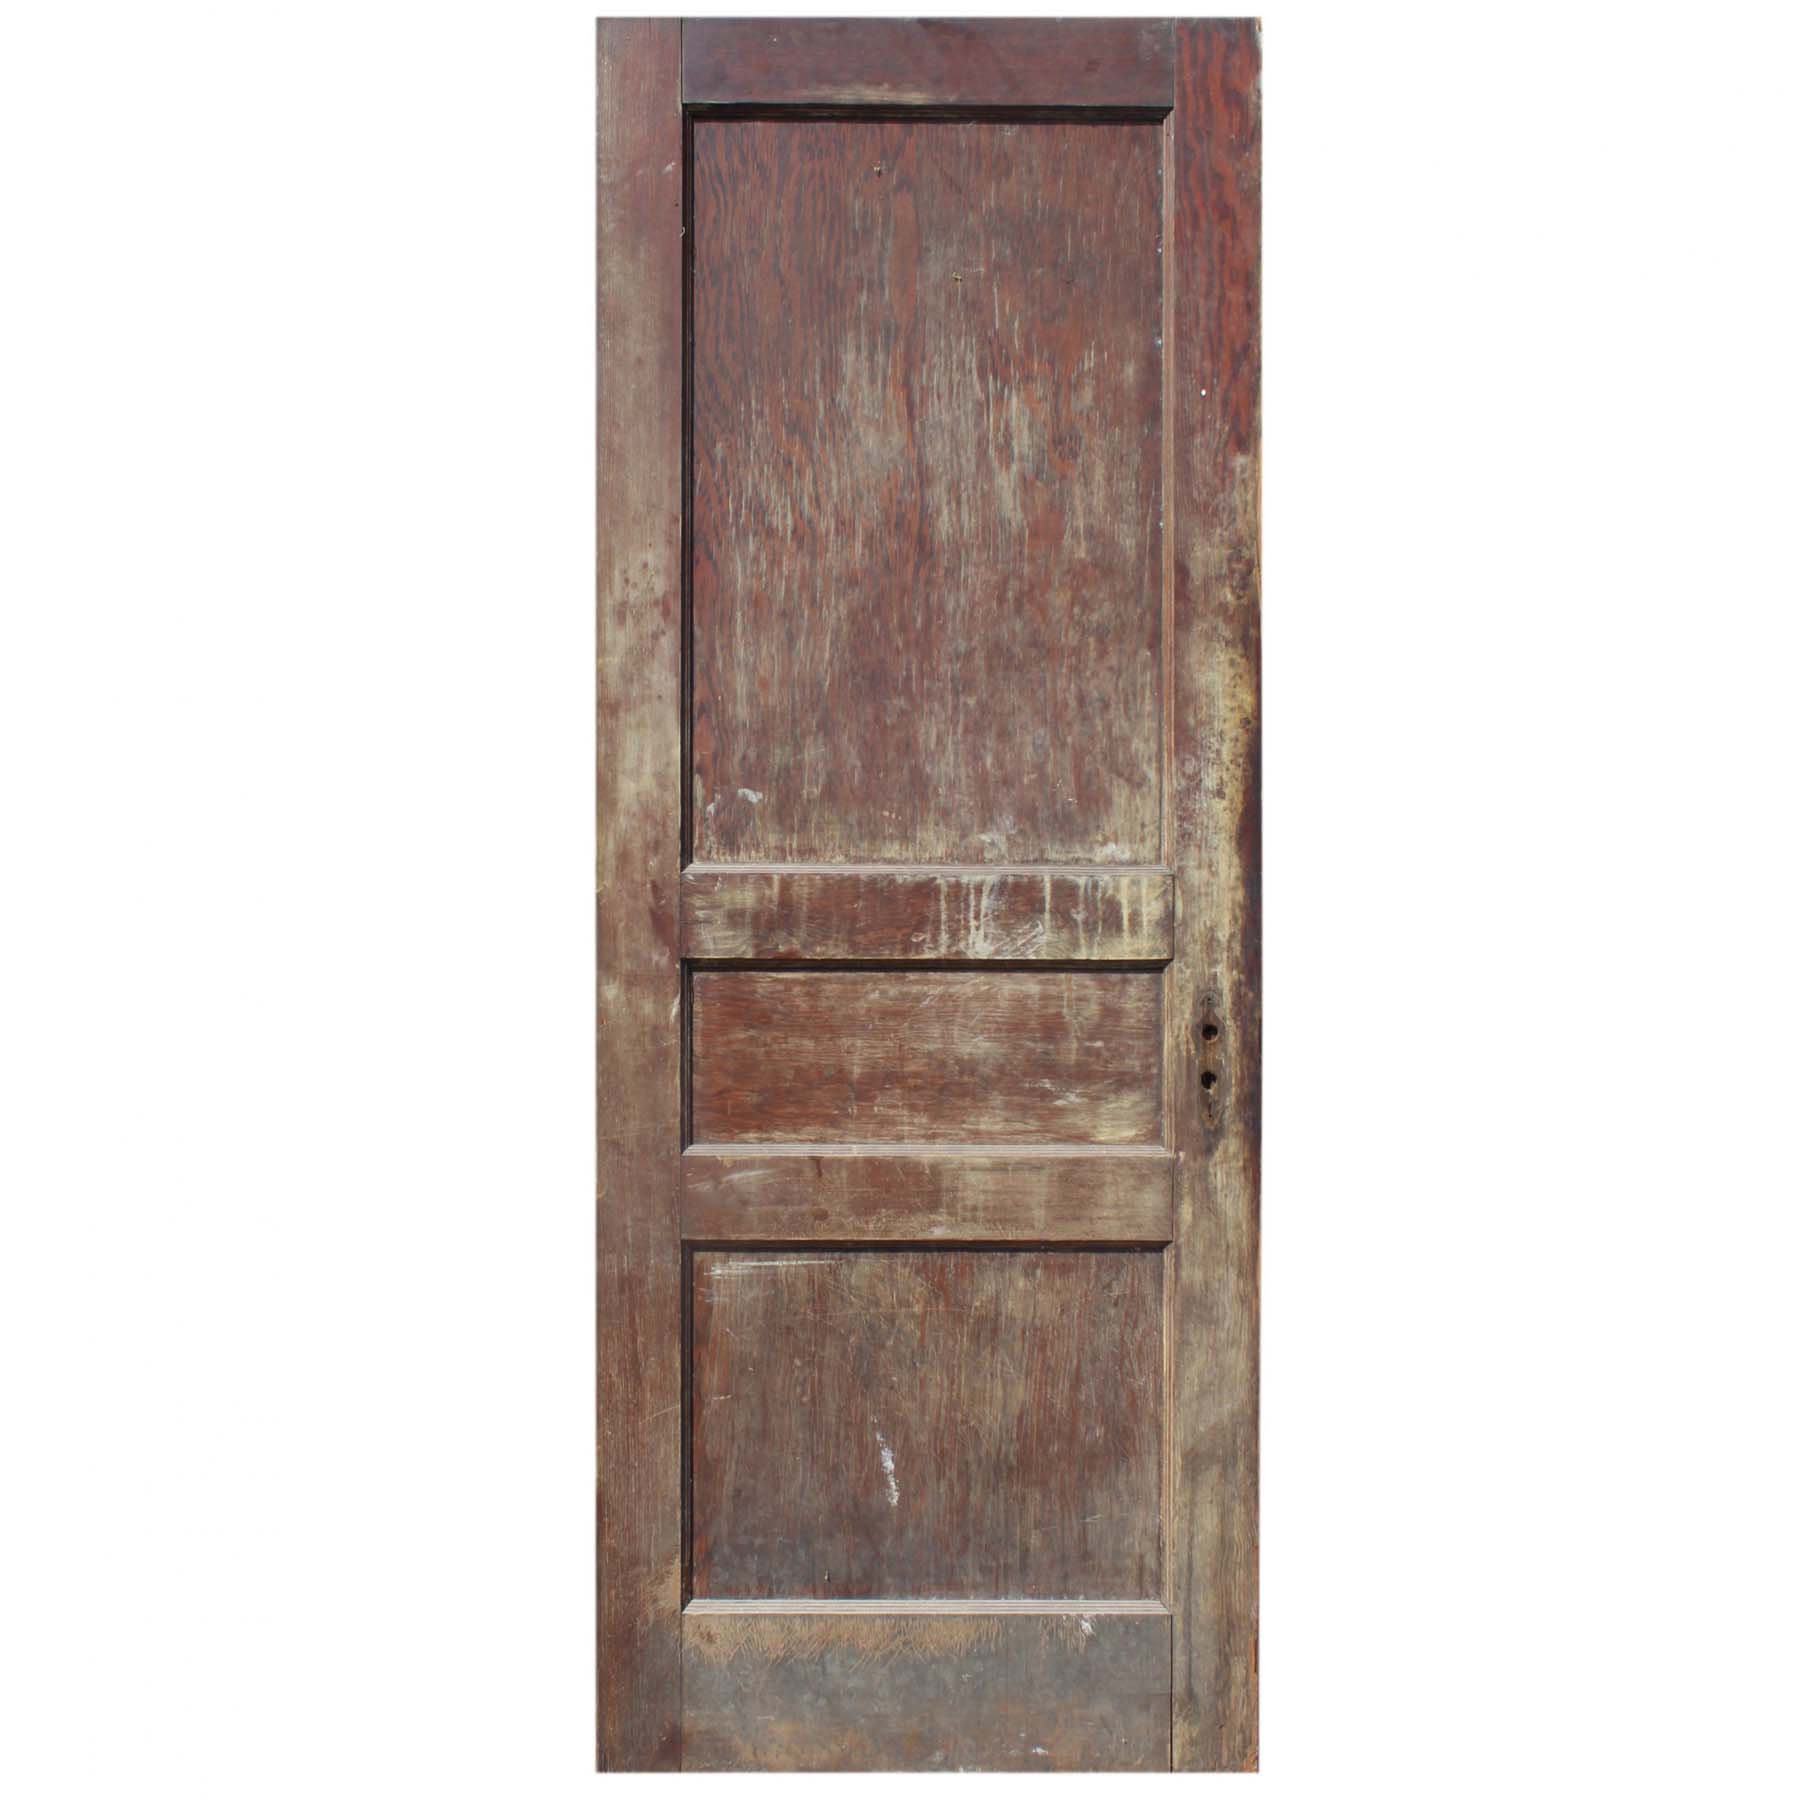 SOLD Reclaimed 30” Three-Panel Solid Wood Door-71725